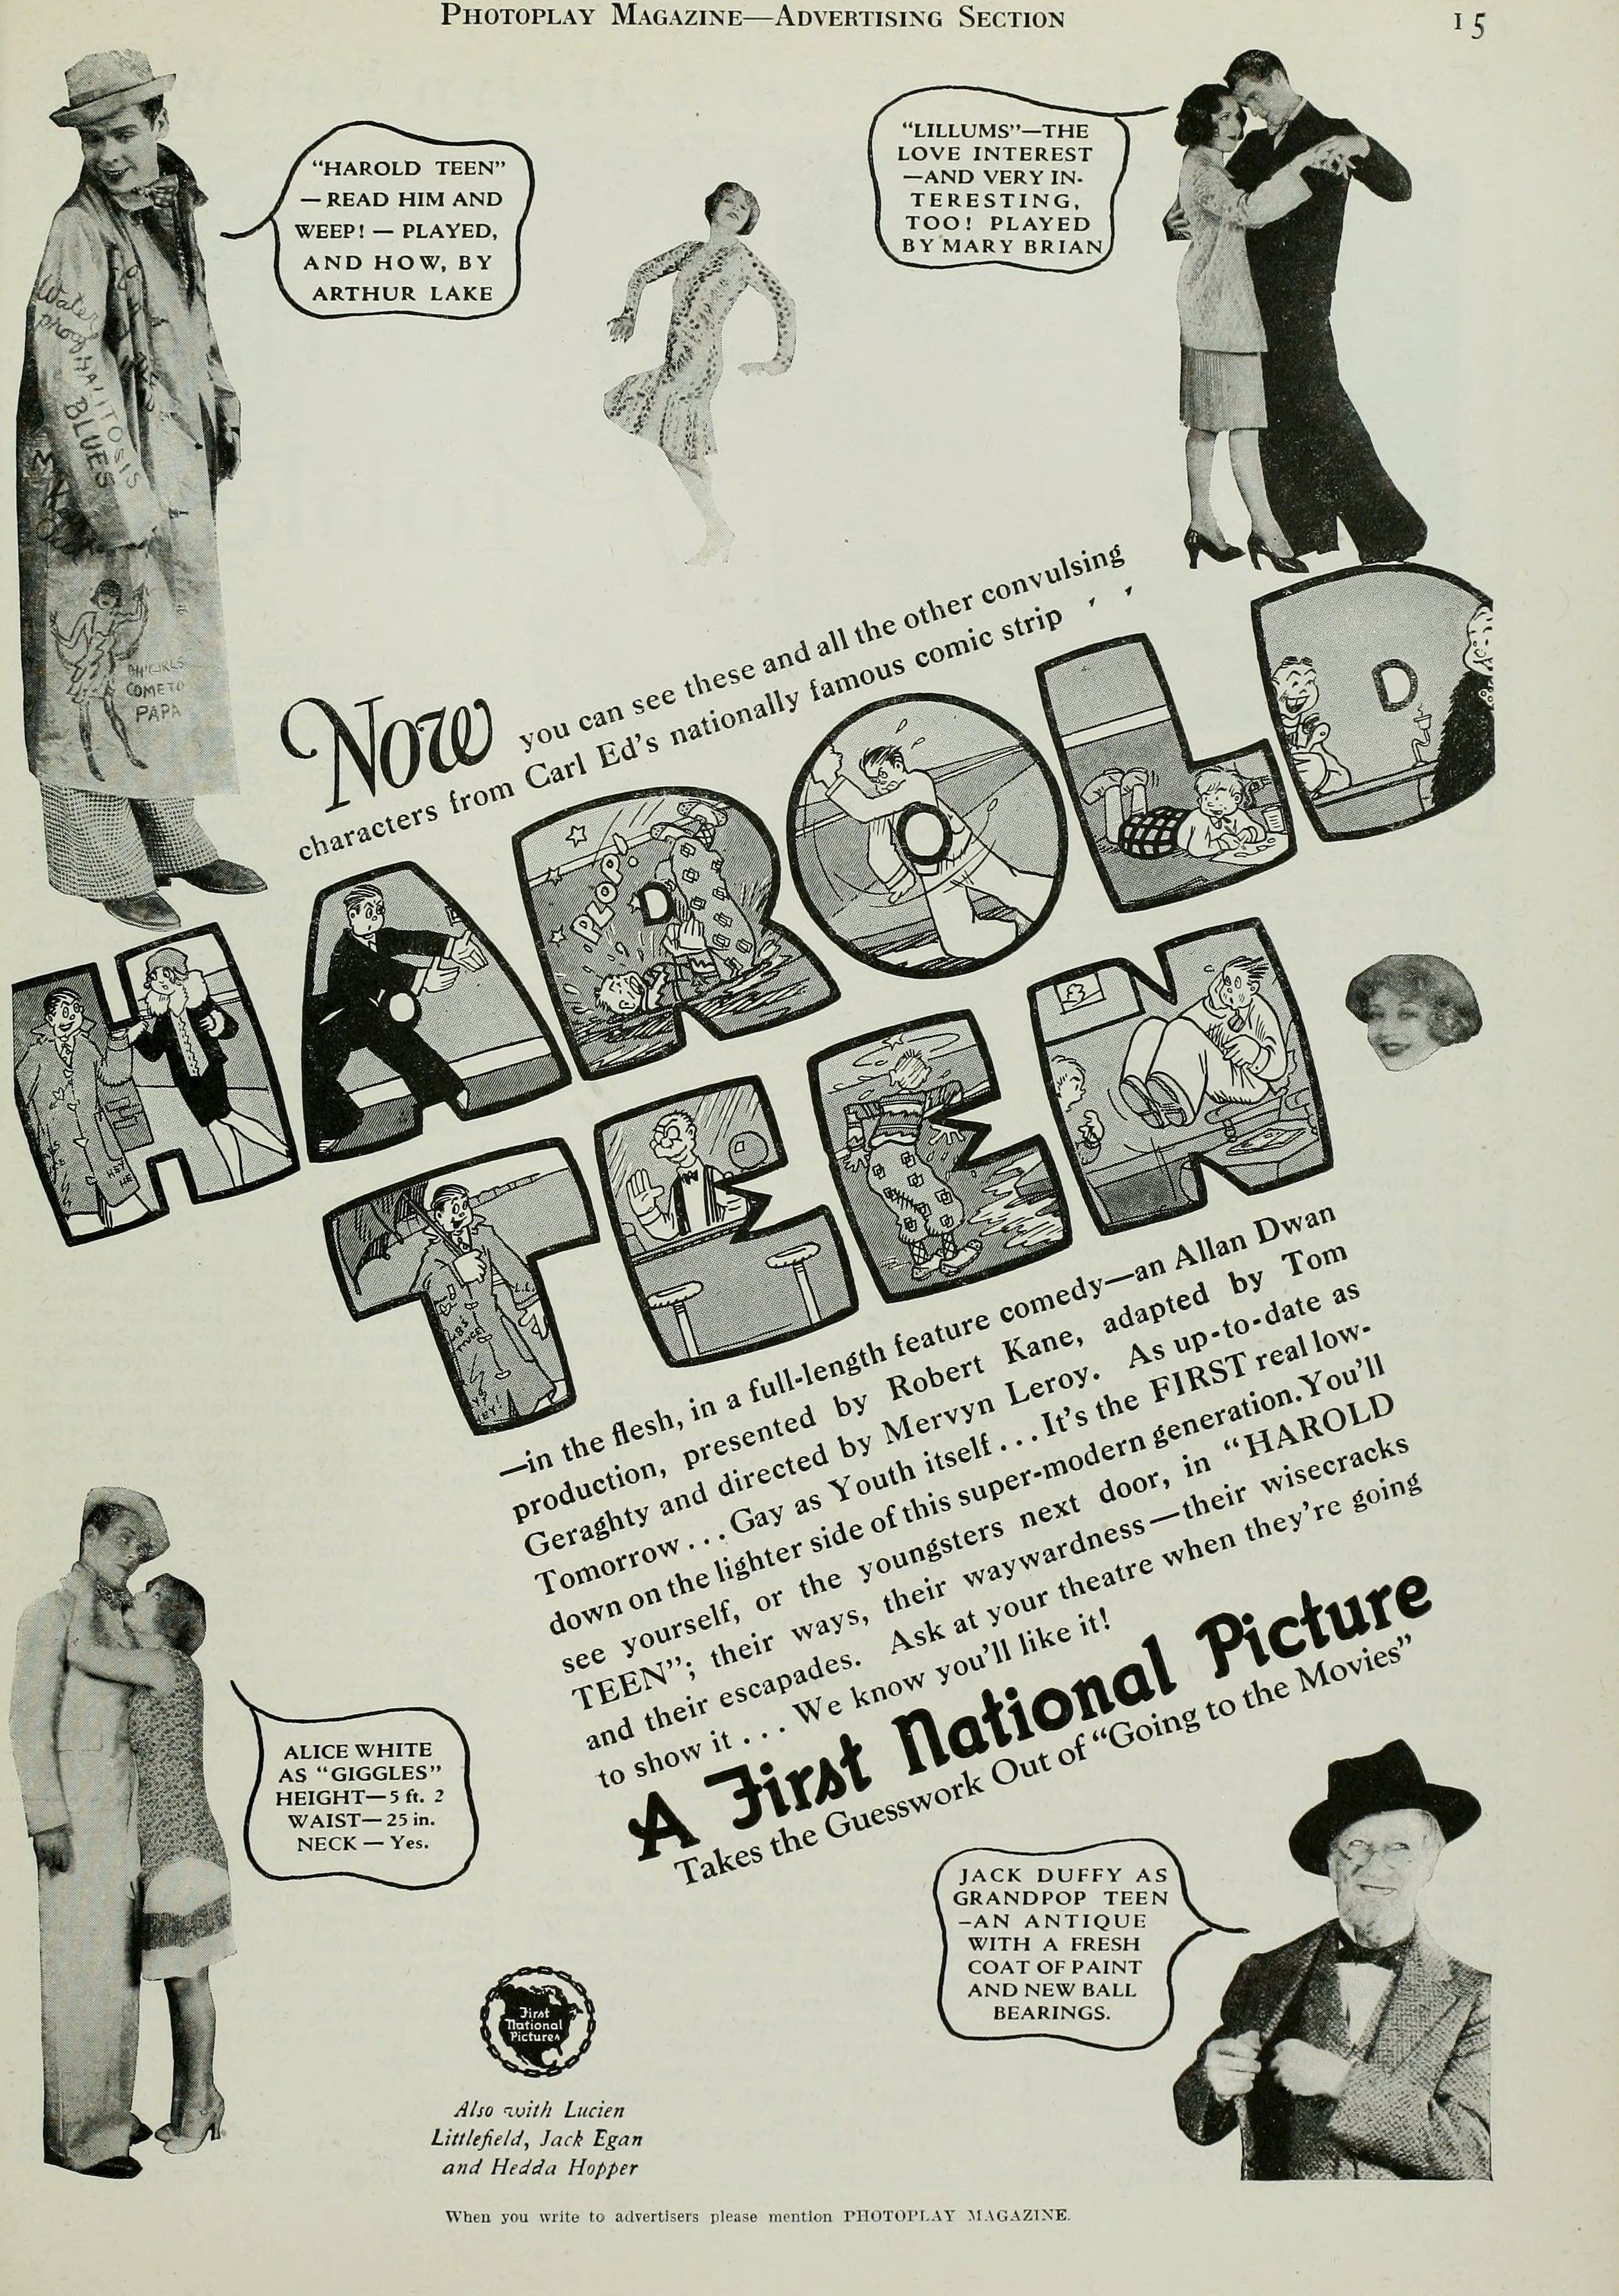 Harold Teen (1928) | www.vintoz.com